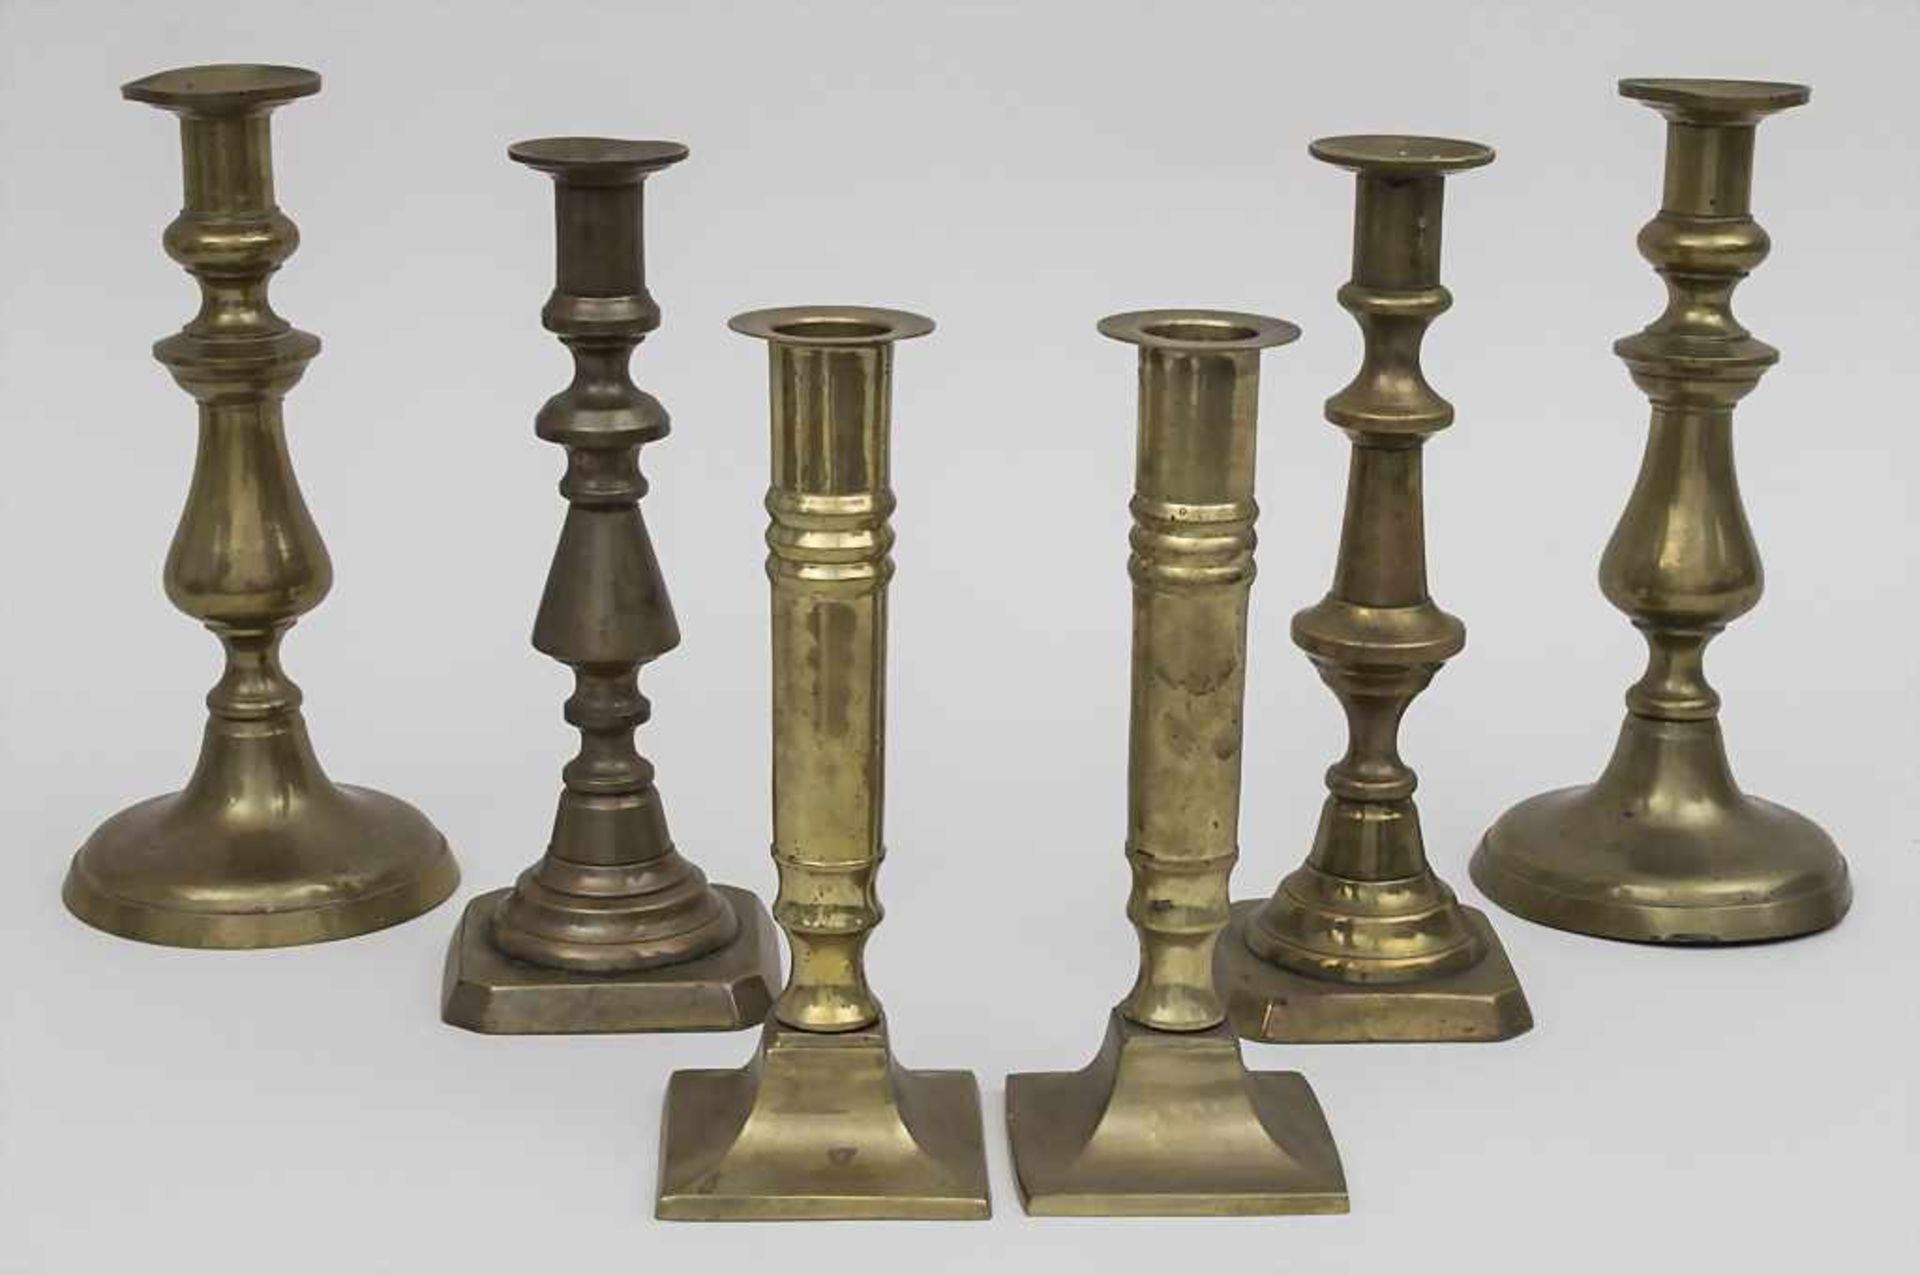 3 Paar Kerzenleuchter / 3 pairs of candlesticks, 20. Jh. Material: Messing, Höhen: 20 - 23 cm,